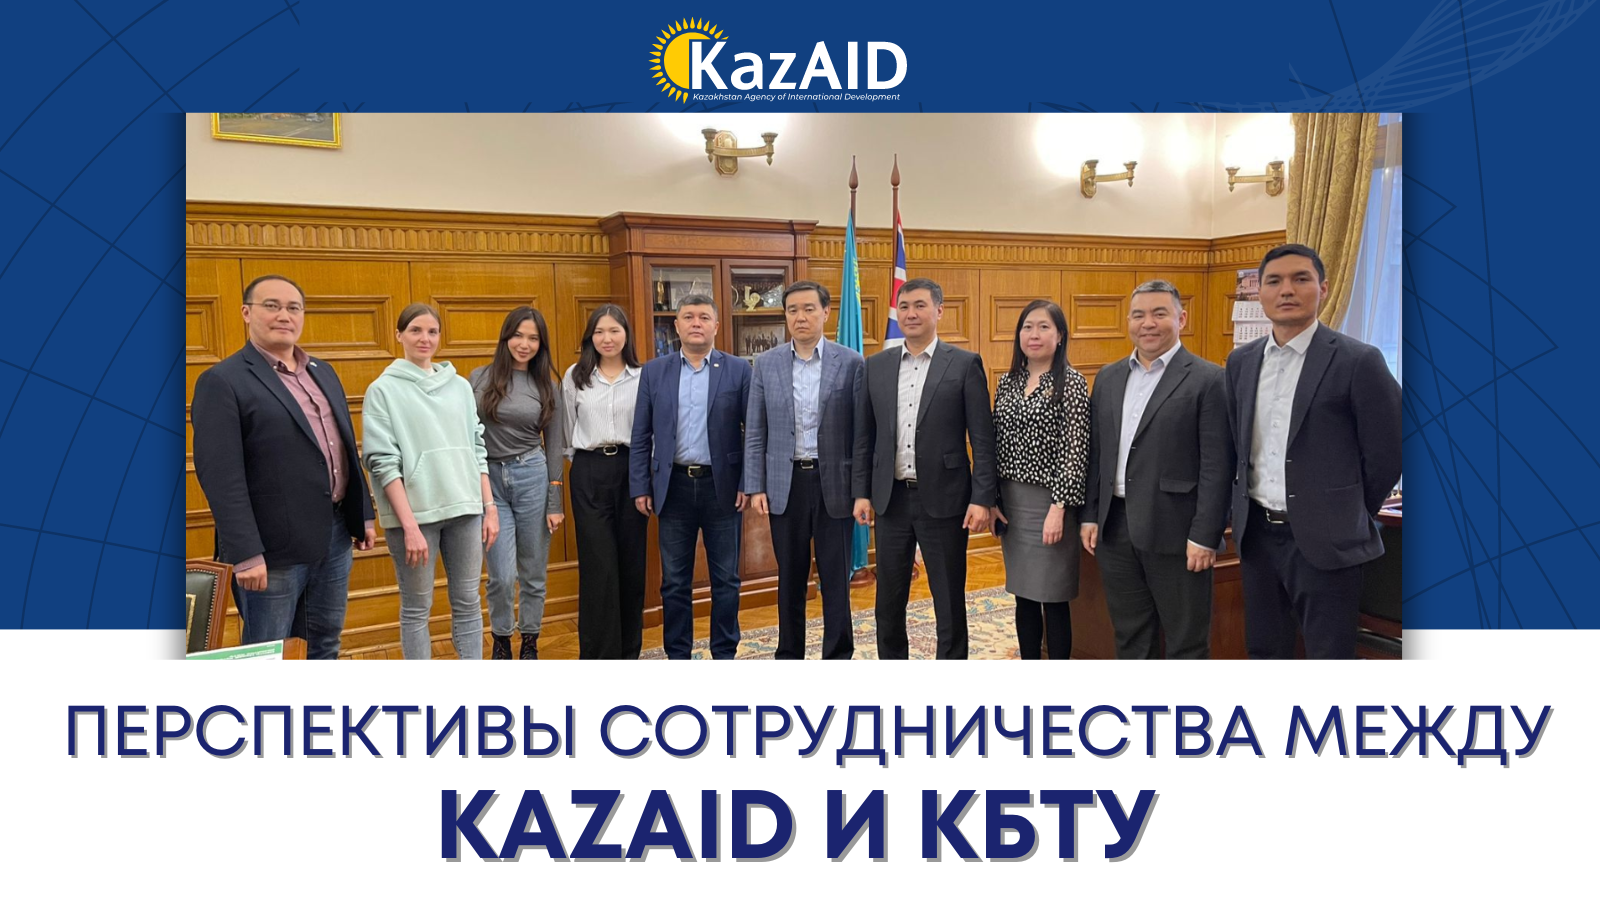 Перспективы сотрудничества между KazAID и КБТУ